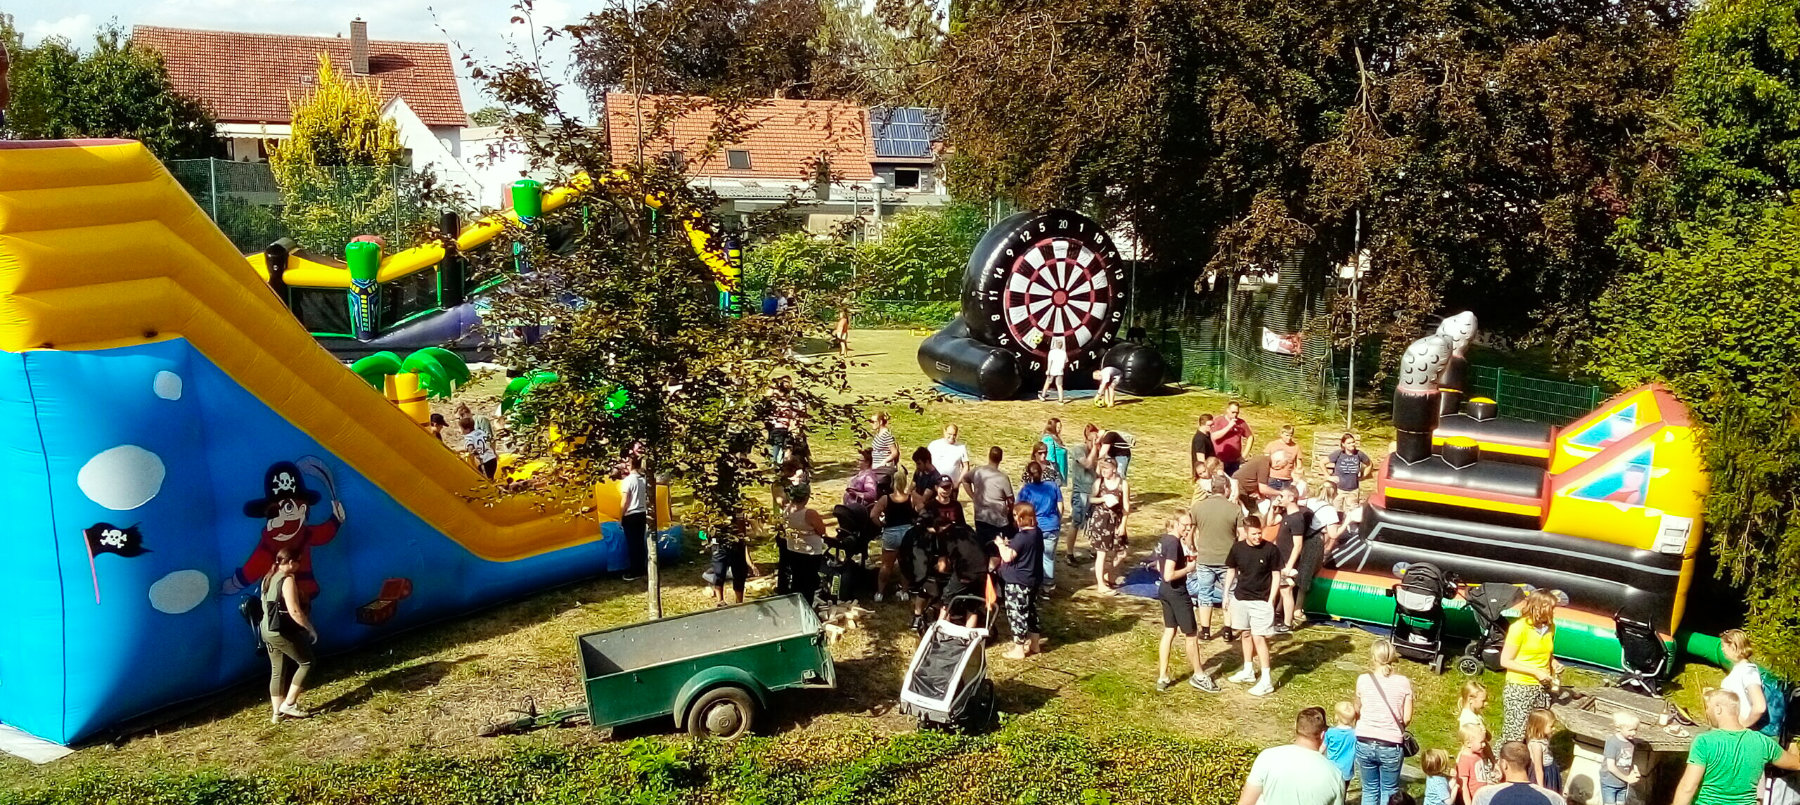 Das Spielfest der evangelische Jugend im Garten des Rauchfangs in Stift Quernheim. Es sind verschiedene Großspielgeräte aufgebaut und viele Menschen zu sehen.